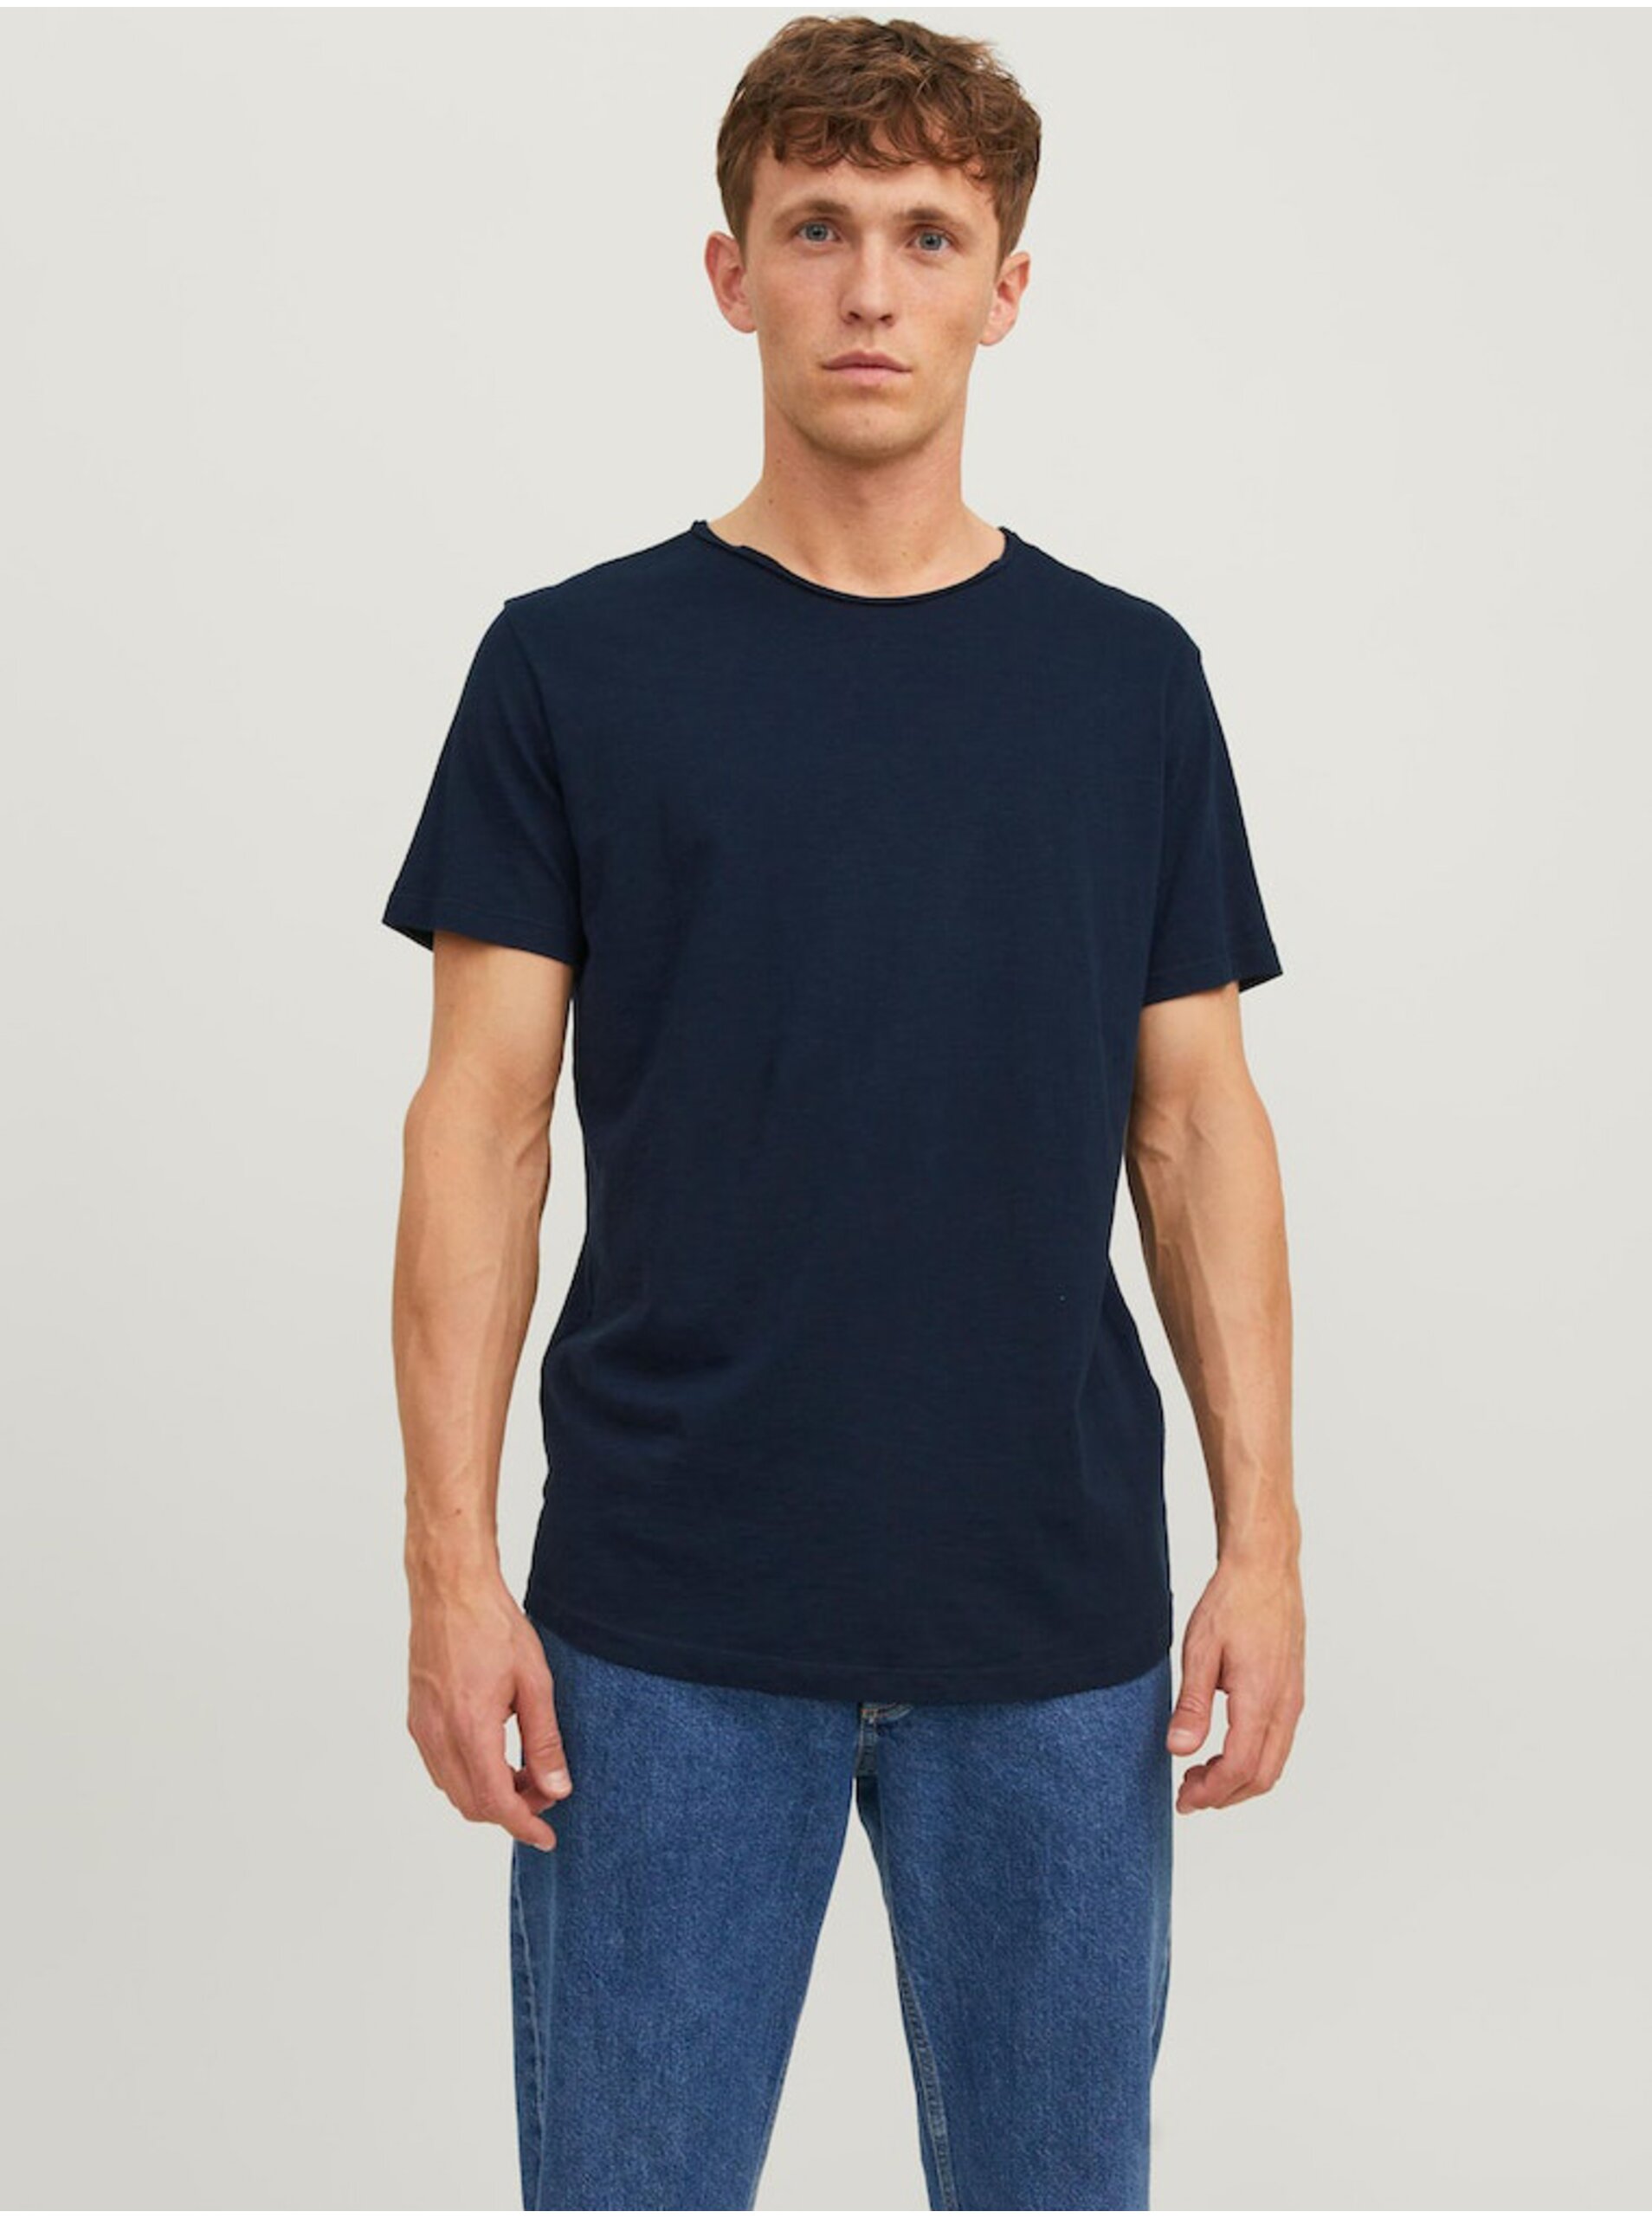 Men's Jack & Jones Basher T-Shirt Navy Blue - Men's